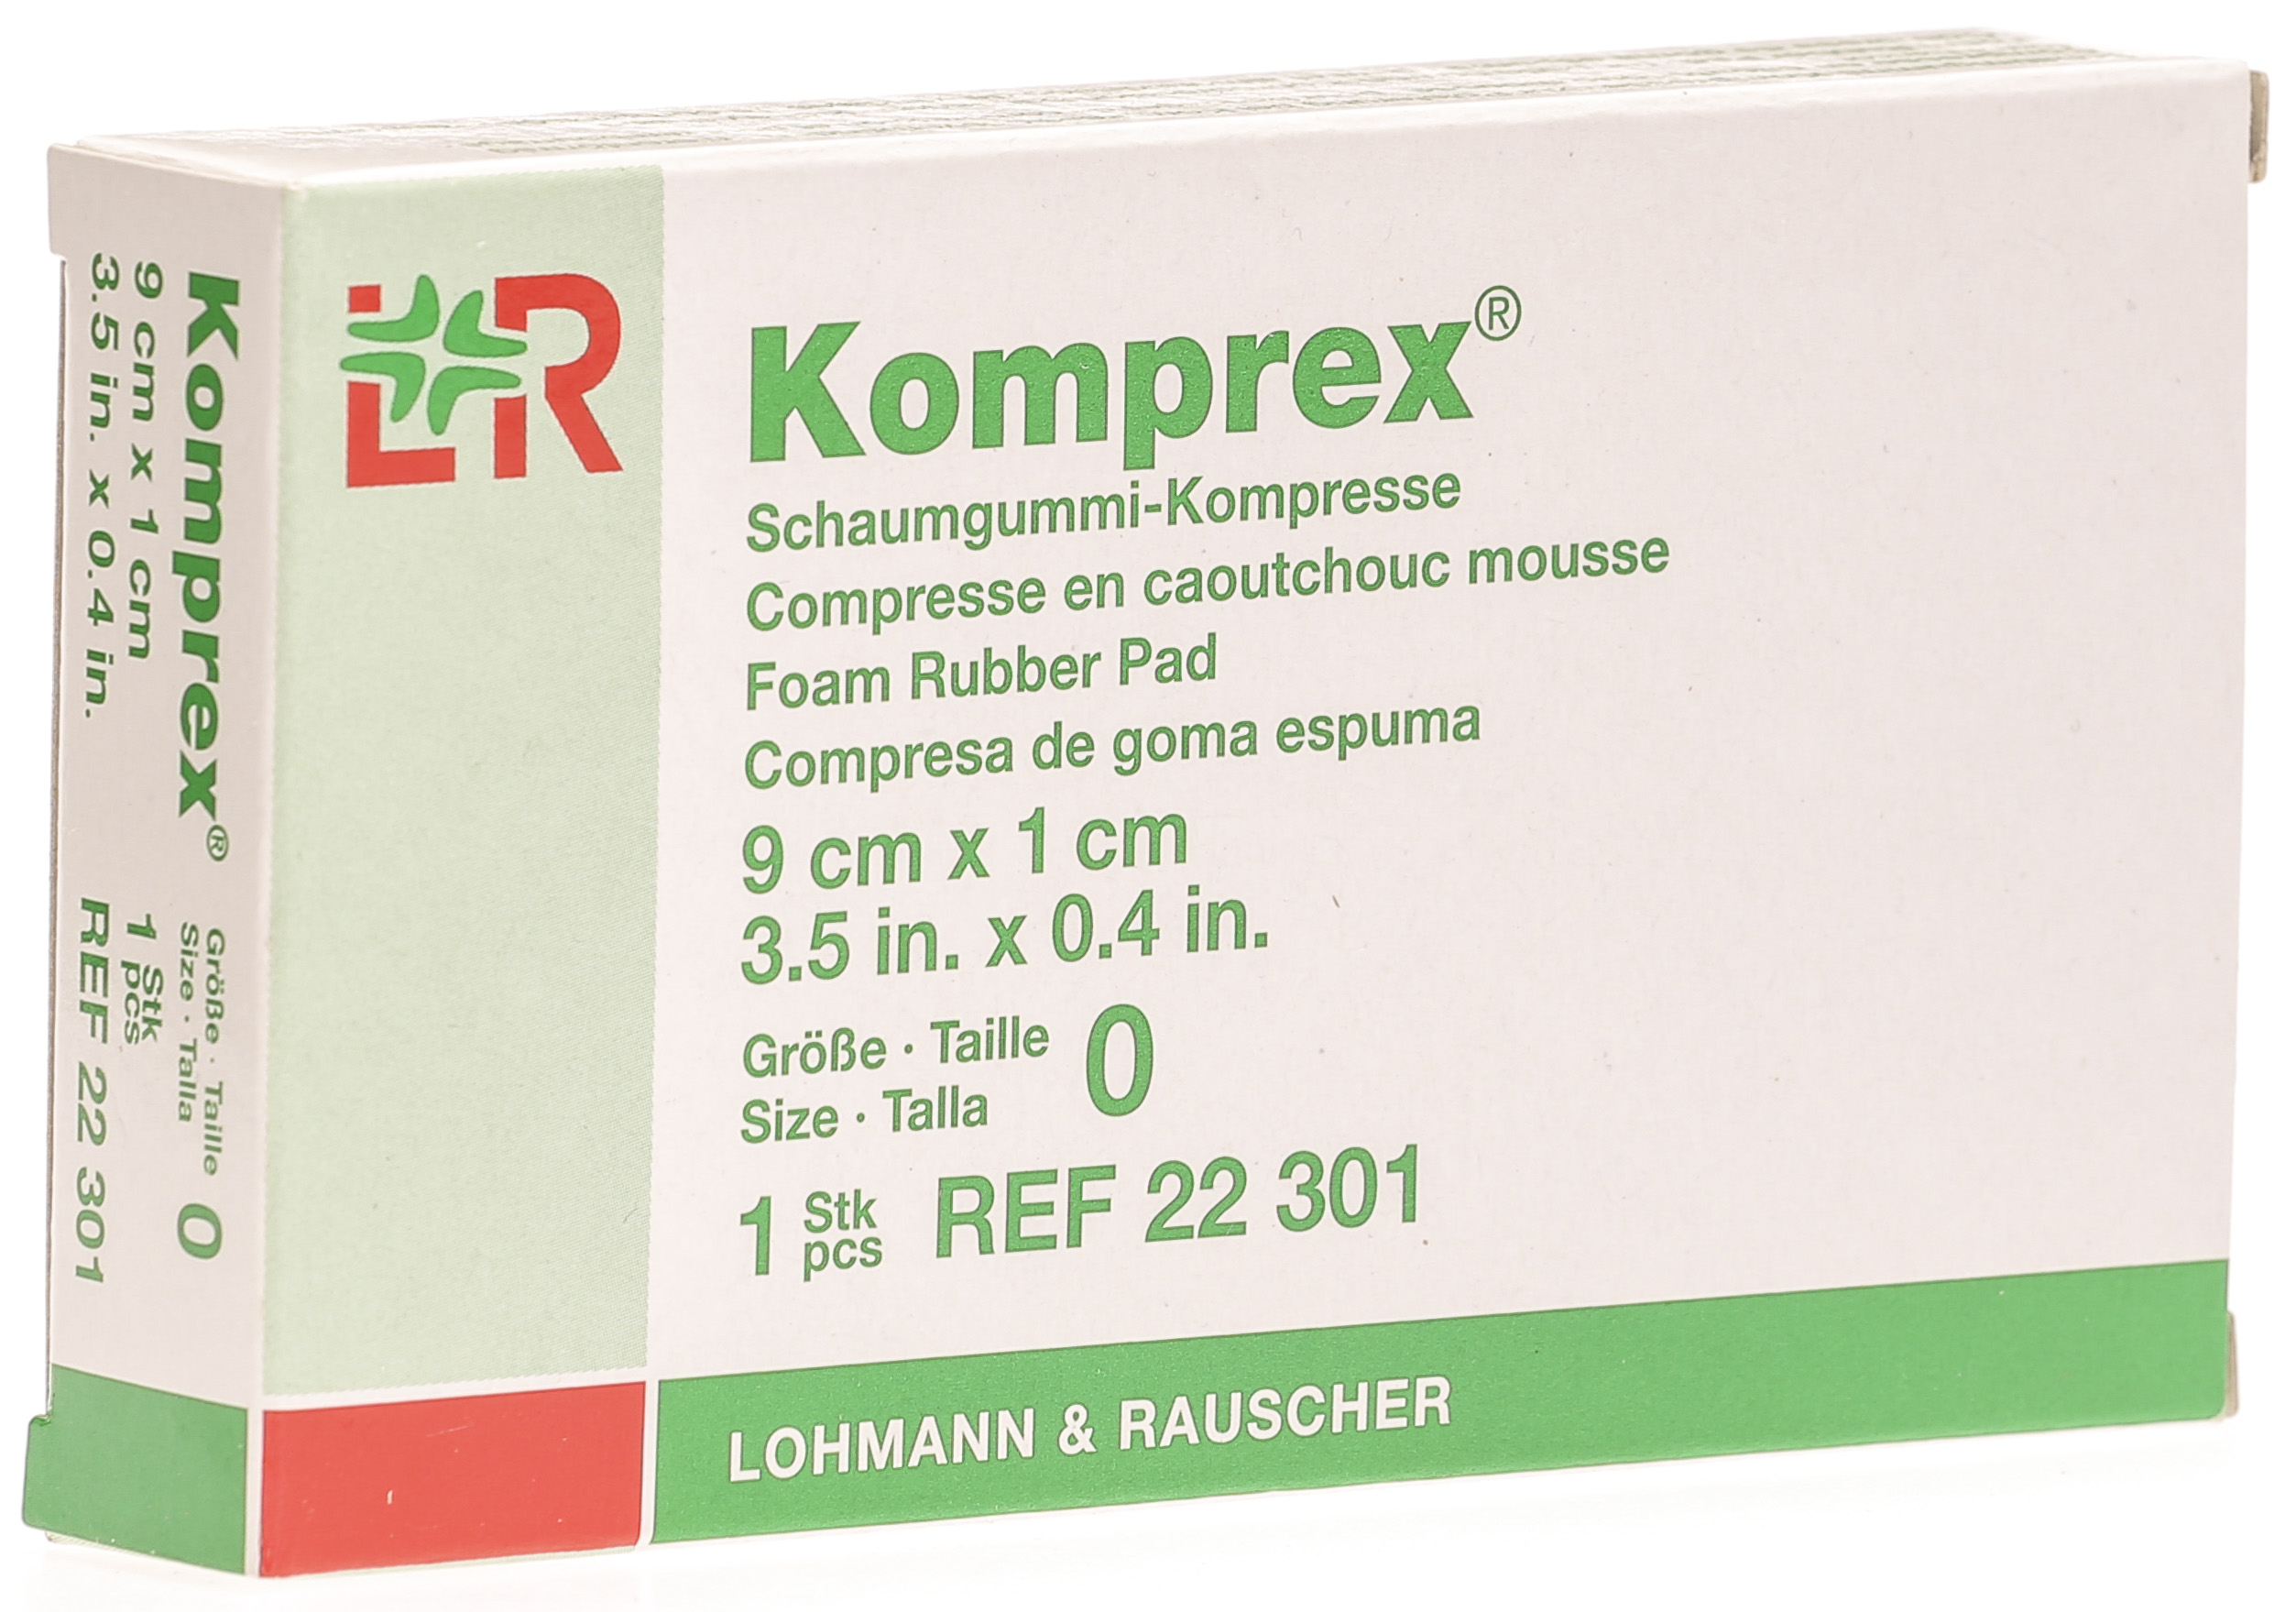 Komprex Schaumgummi-Kompresse